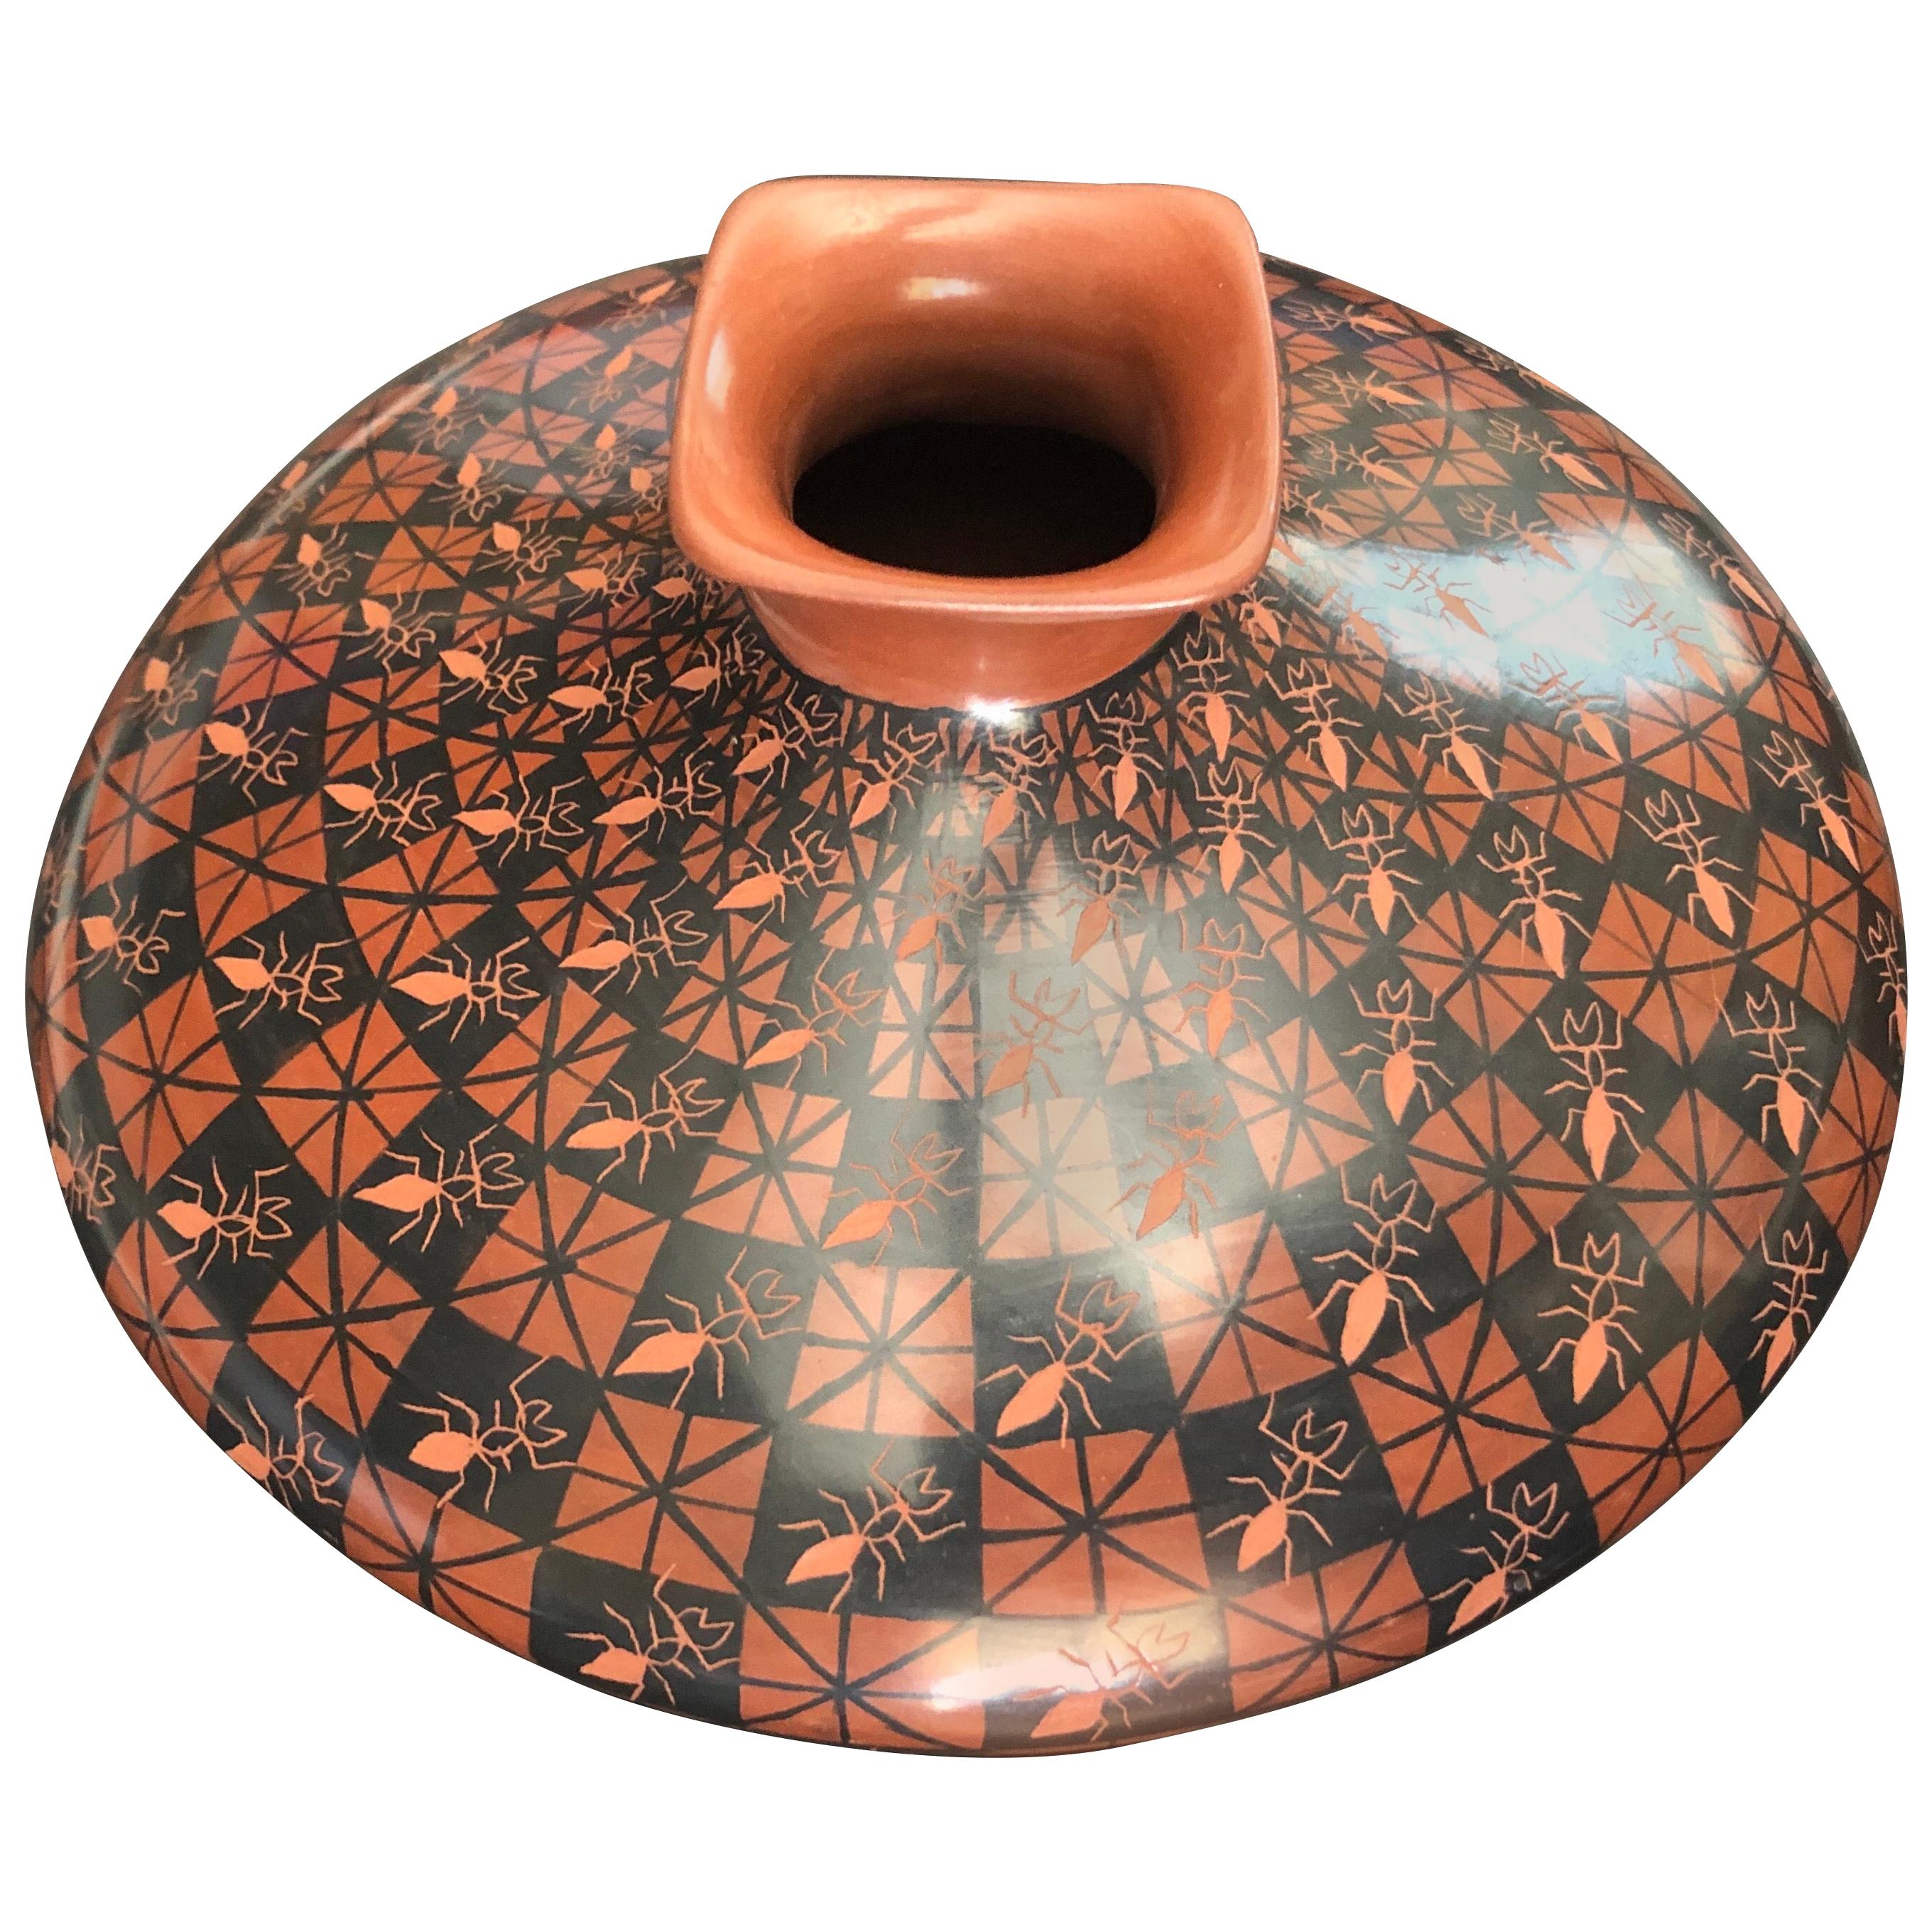 Vase à motif de fourmis de la poterie Mata Ortiz / Pot à graines par Yoly Ledezma